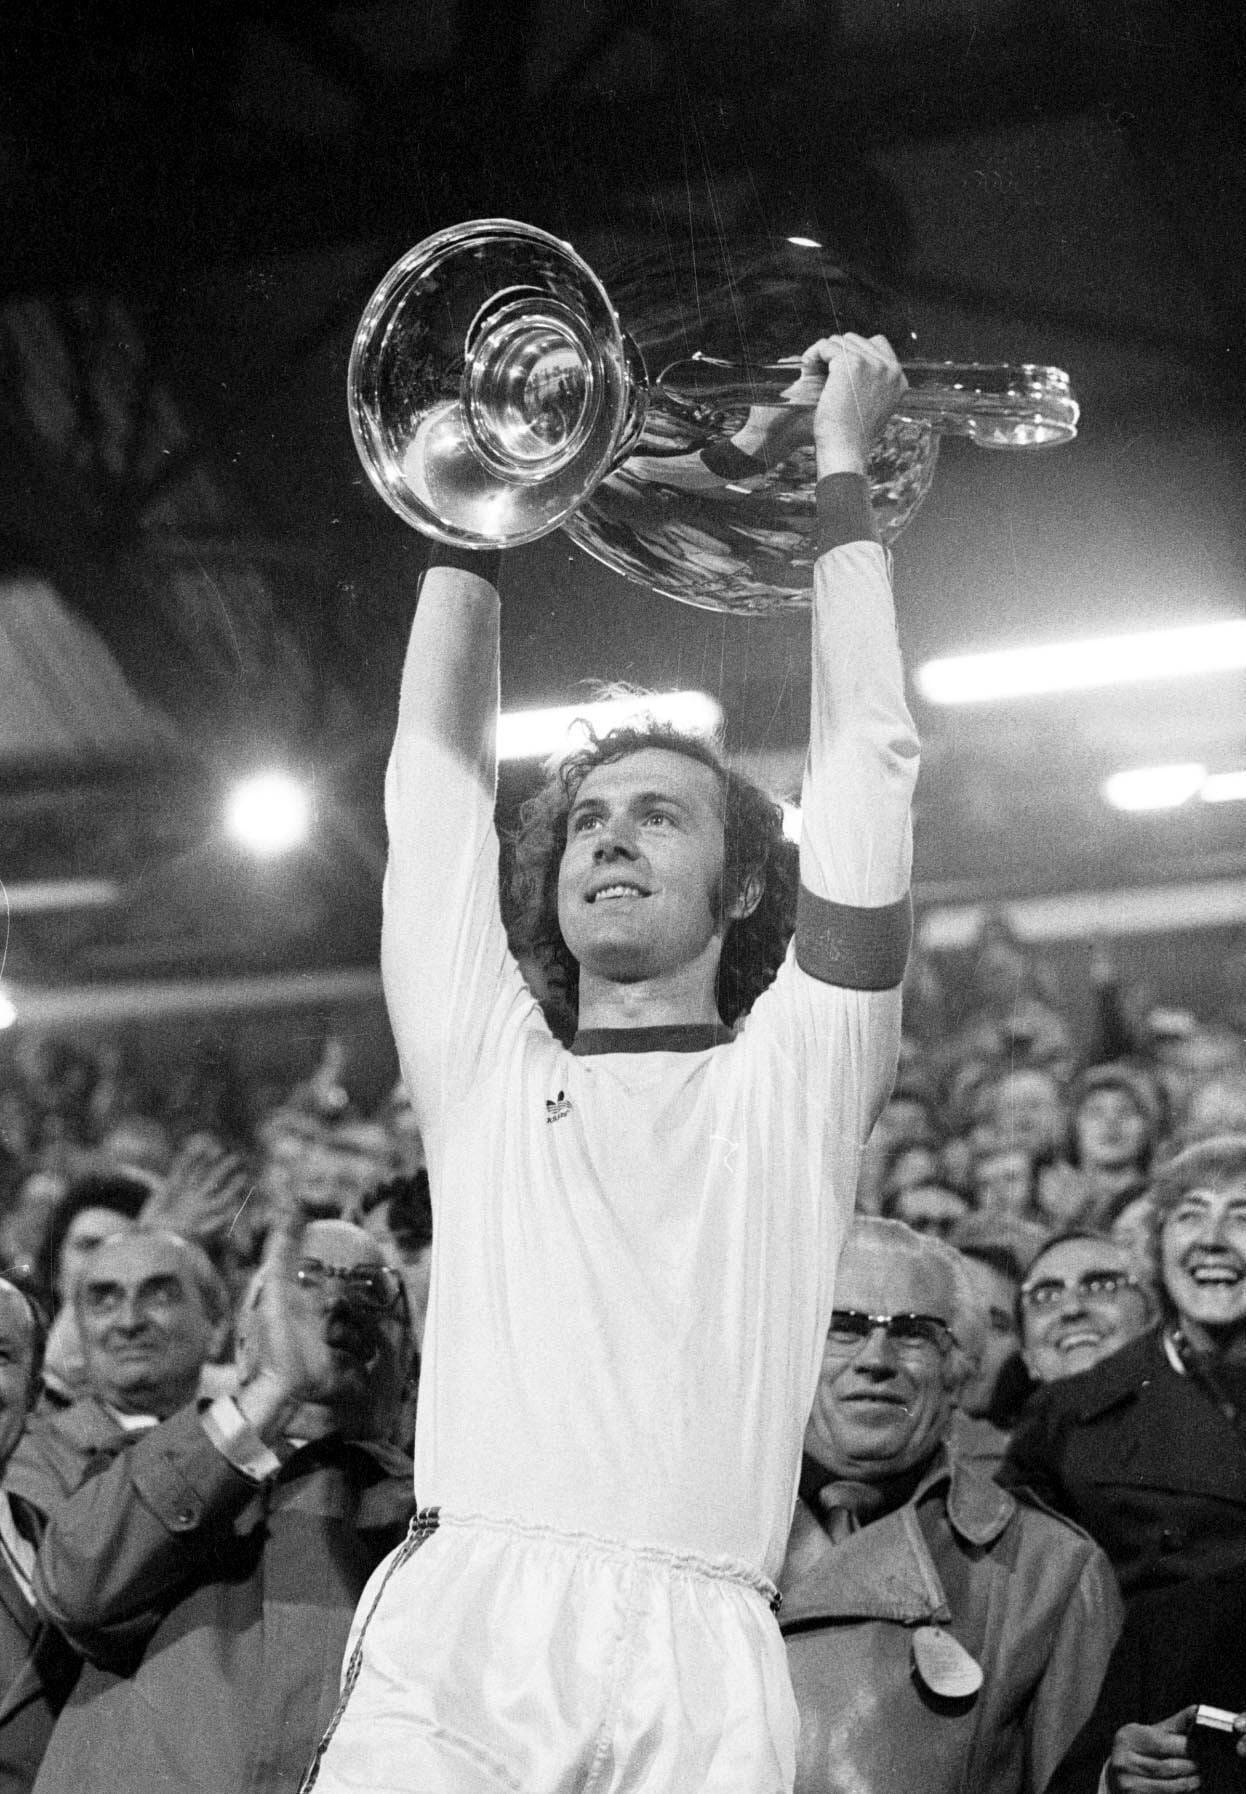 Der erste große internationale Triumph mit dem FC Bayern. Beckenbauer präsentiert 1974 den Fans den Europapokal der Landesmeister. Diesen Titel wird der FC Bayern in den darauffolgenden zwei Jahren verteidigen.